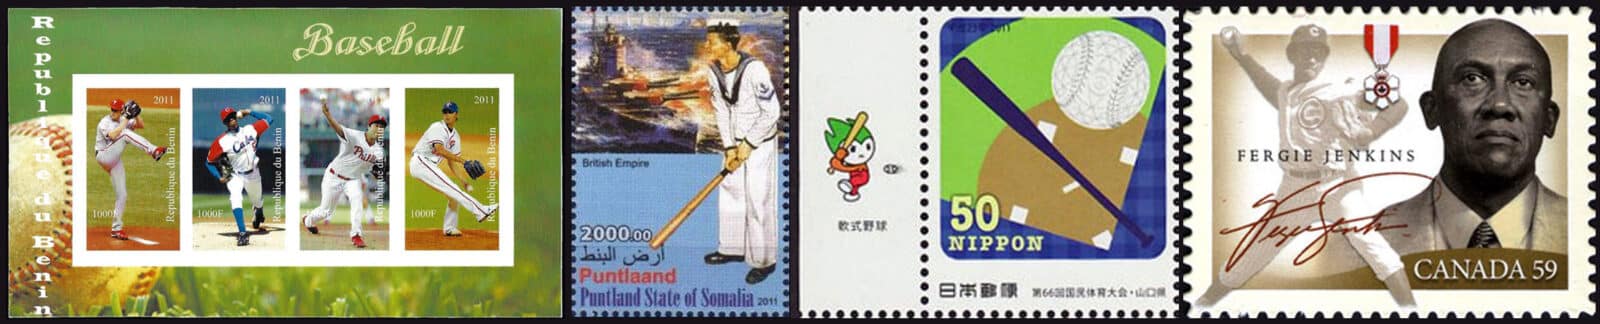 2011 Baseball Postage Stamps header